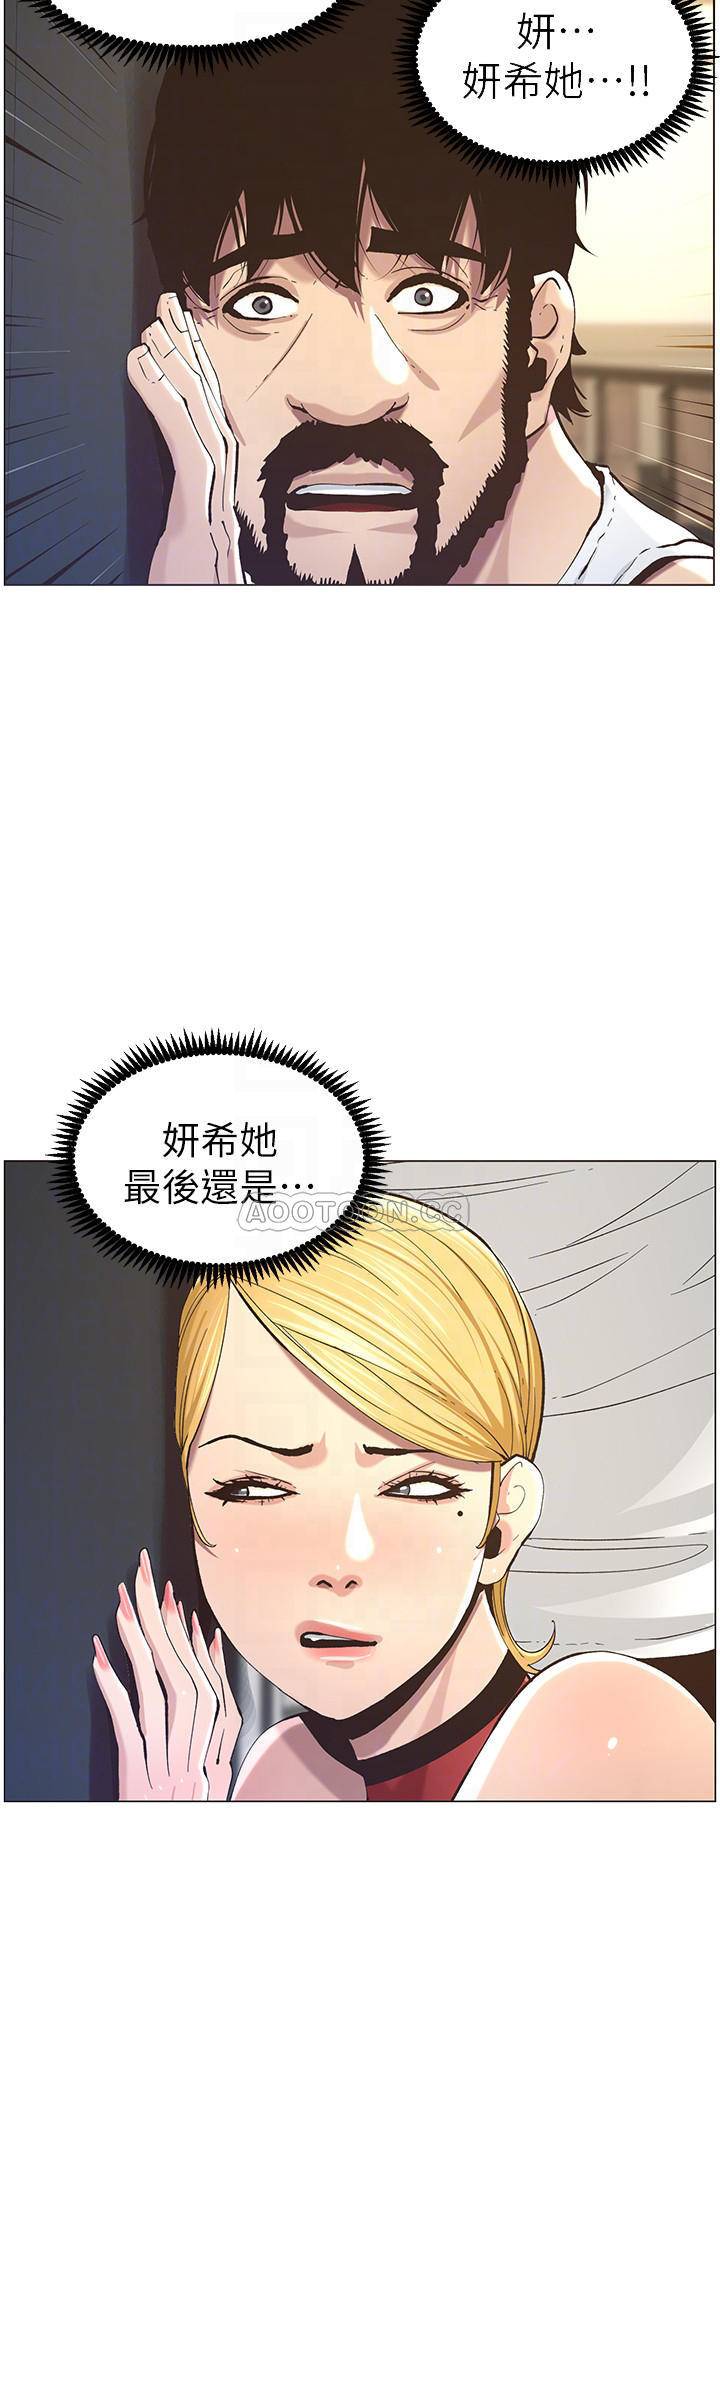 韩国污漫画 姐妹與繼父 第50话-性事不满足就变心 8